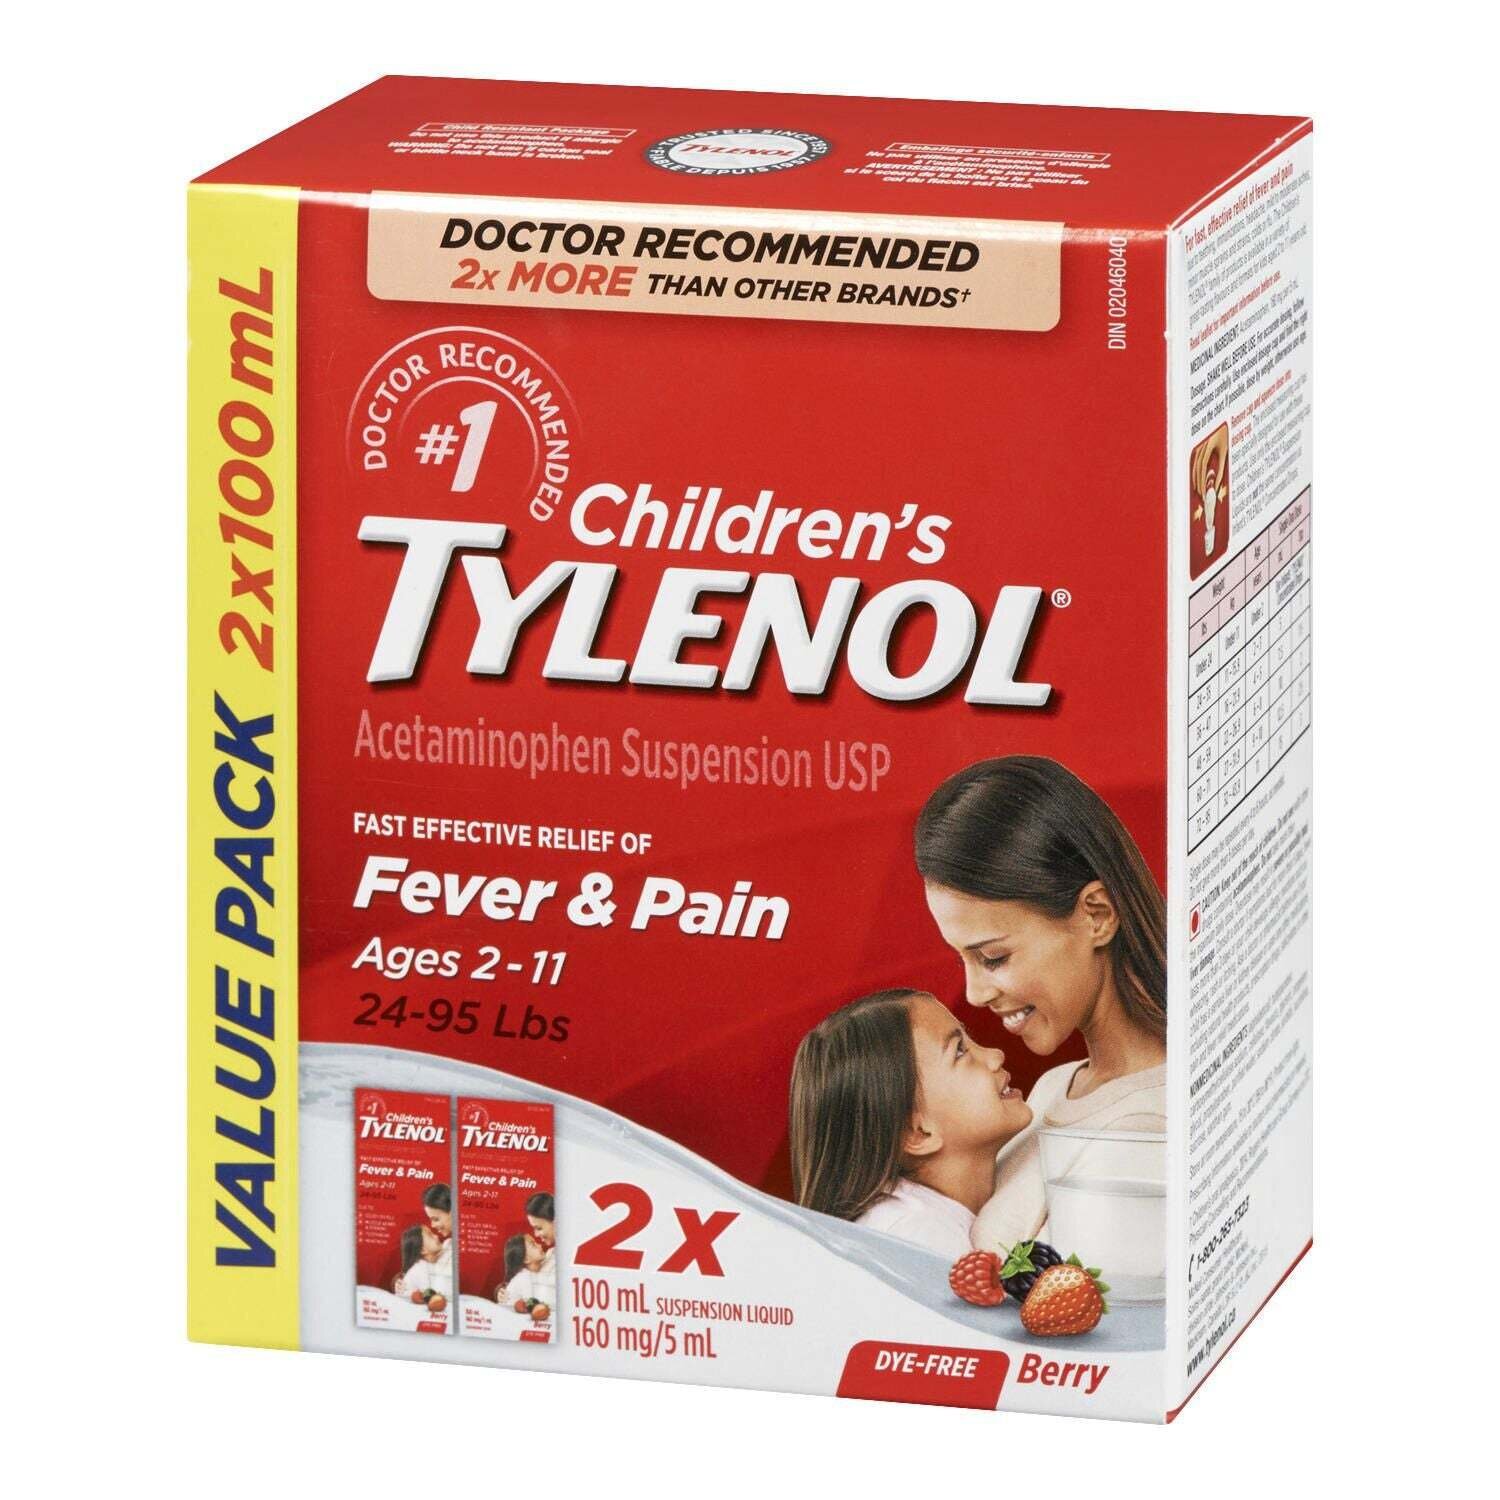 Children's Tylenol, Fever & Pain Dye Free 100ml